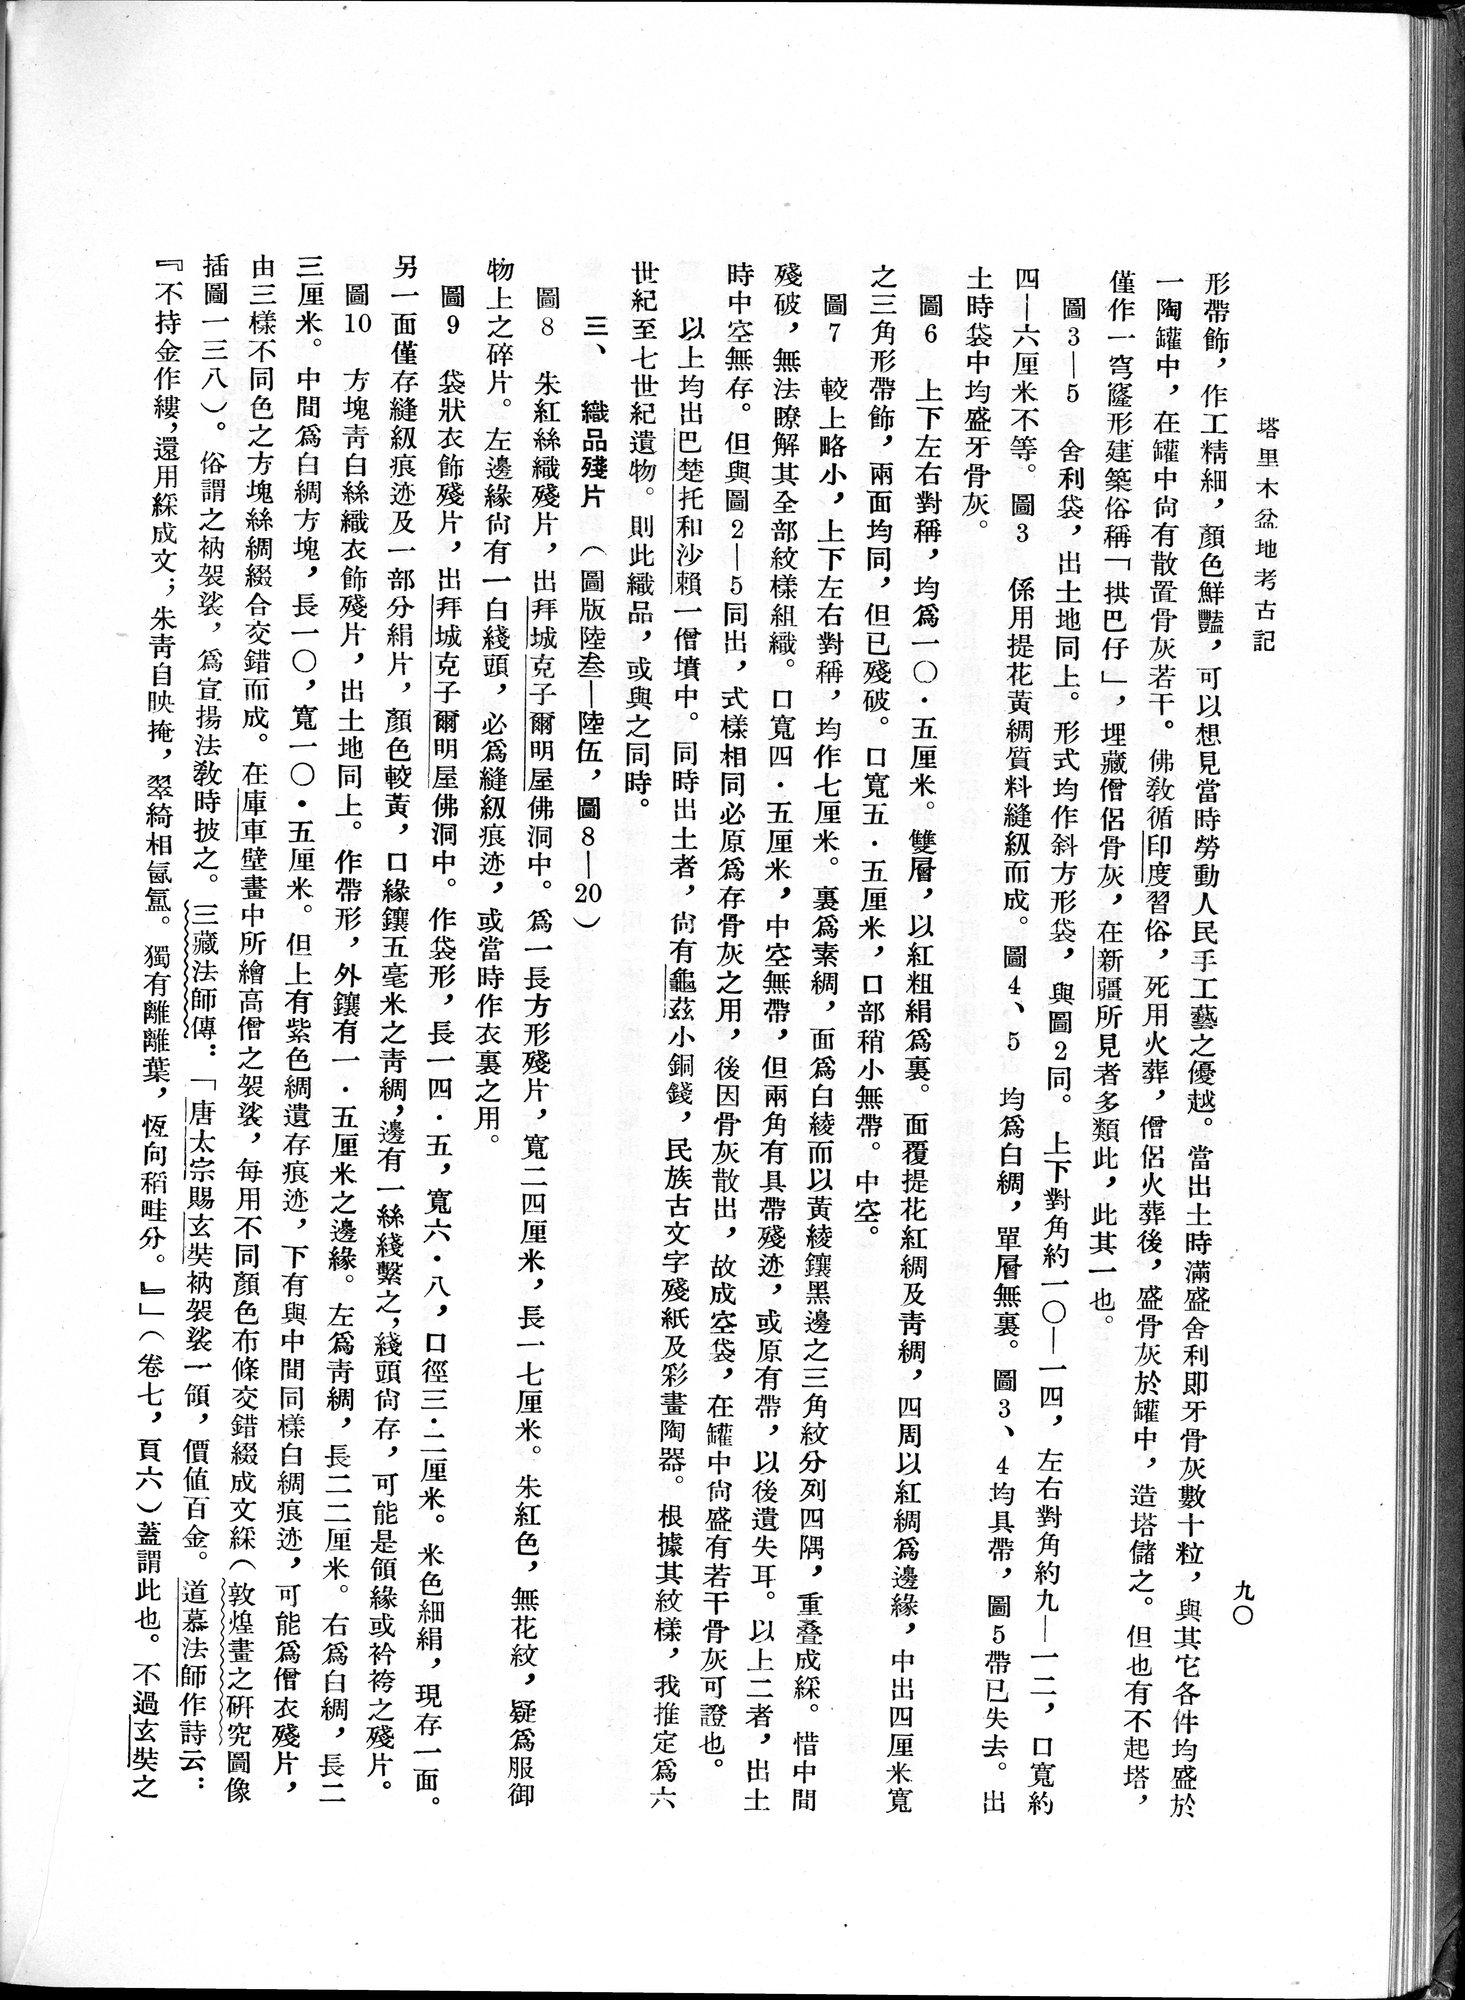 塔里木盆地考古記 : vol.1 / 154 ページ（白黒高解像度画像）